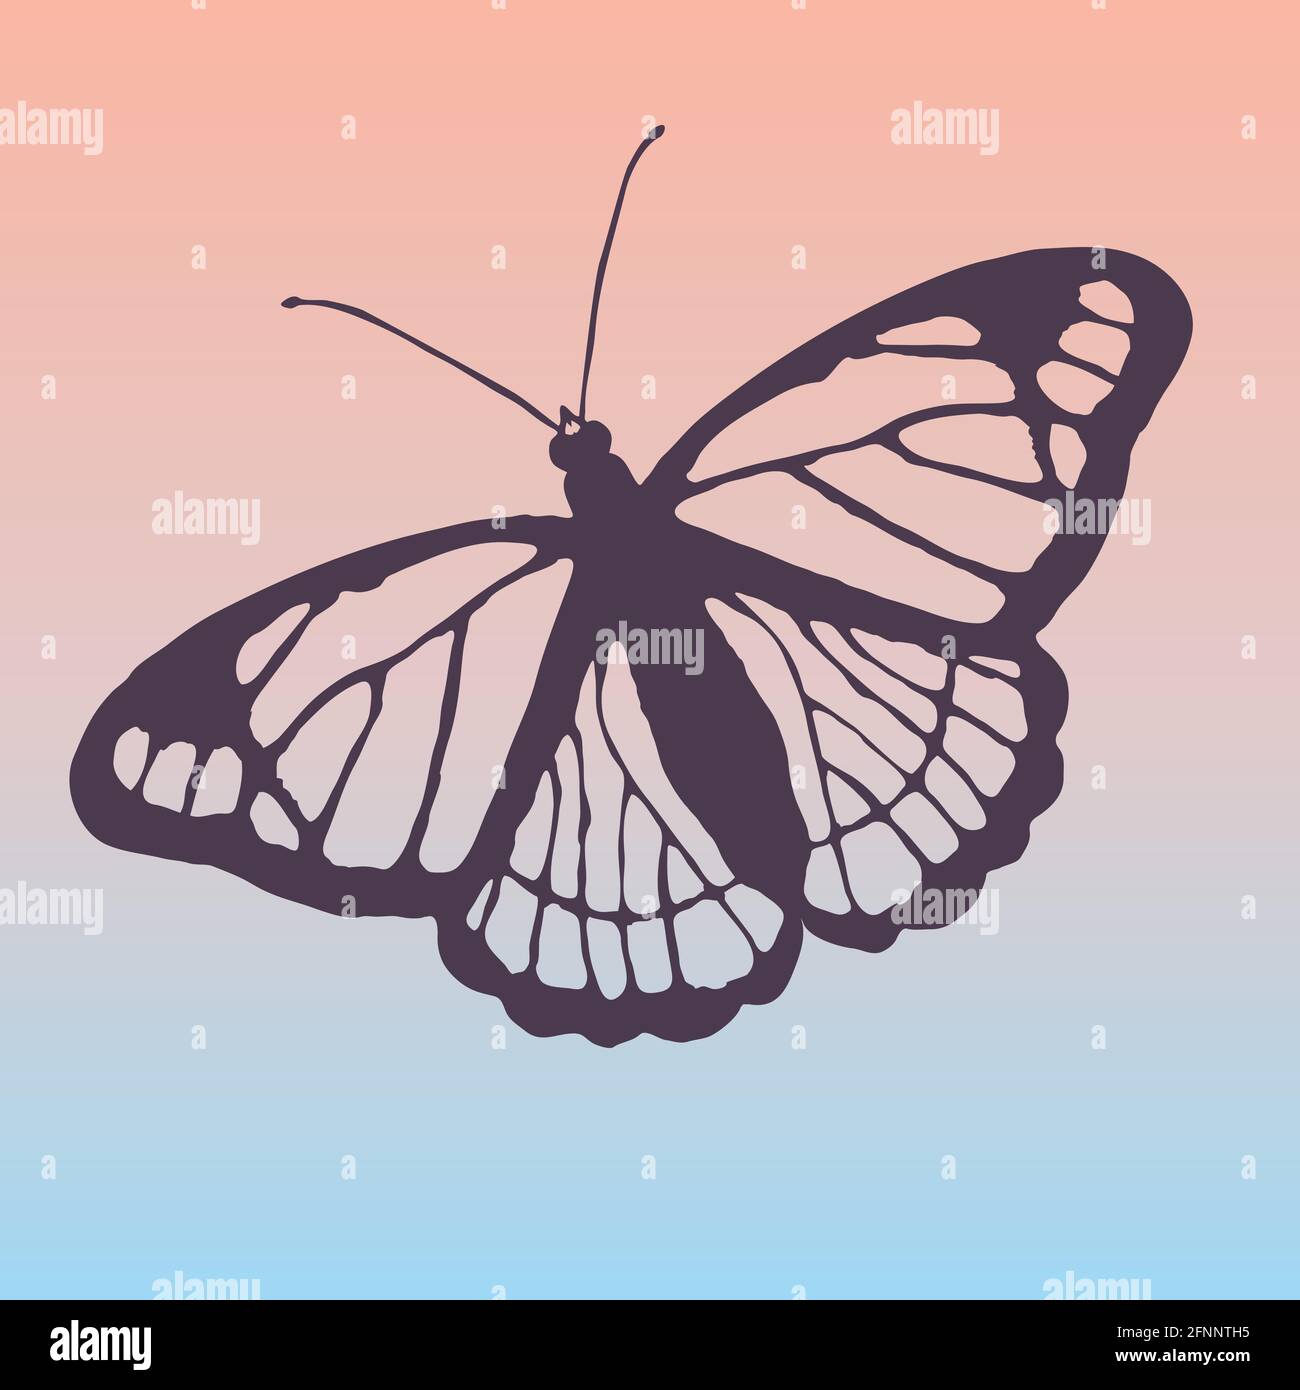 Contorno de una mariposa. Usted ve las venas en sus alas, los espacios entre ellos son transparentes. El fondo es un suave gradiente rosa y azul Ilustración del Vector